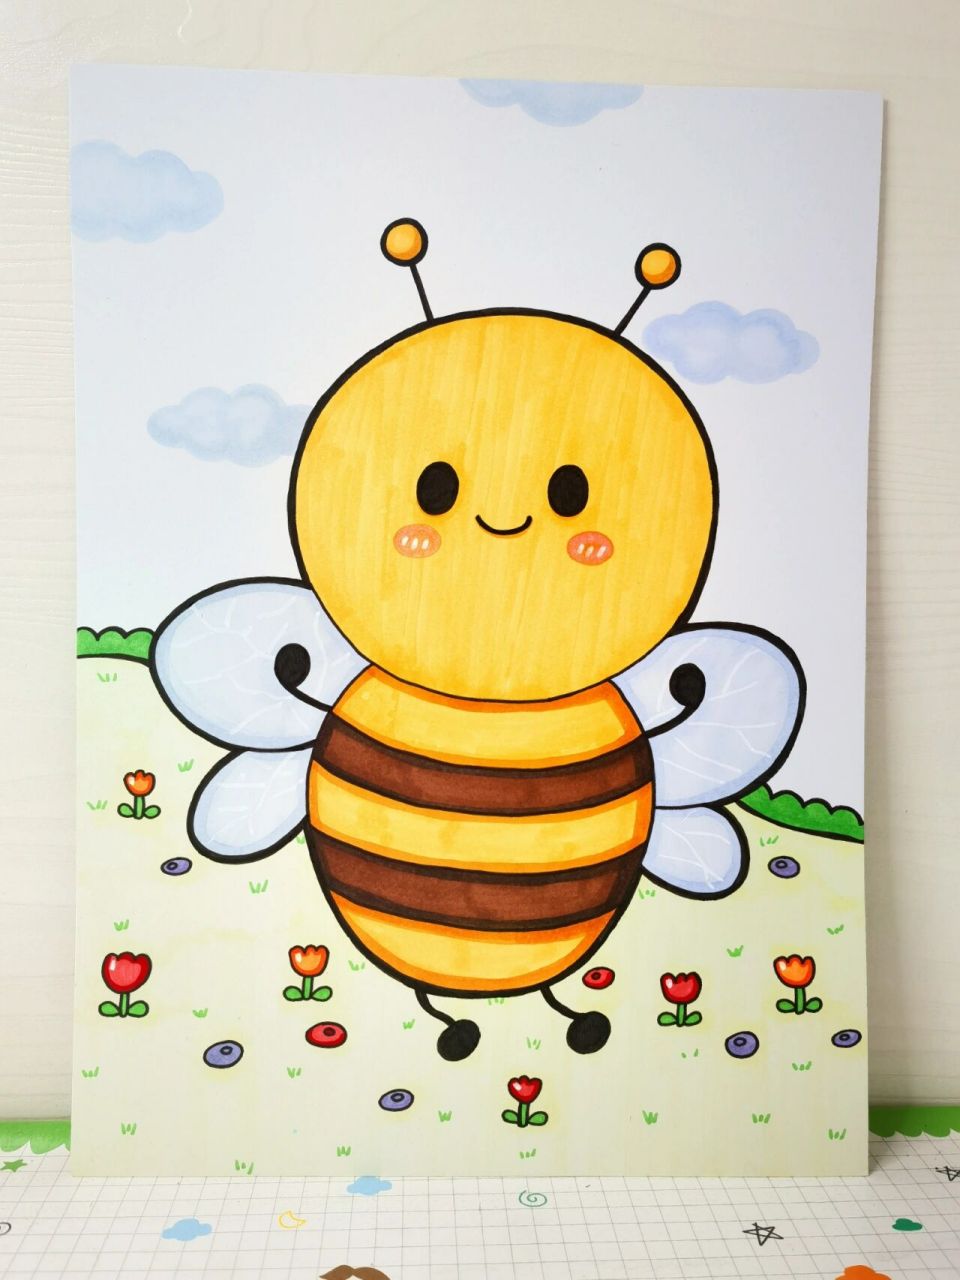 蜜蜂儿童简笔画彩色图片